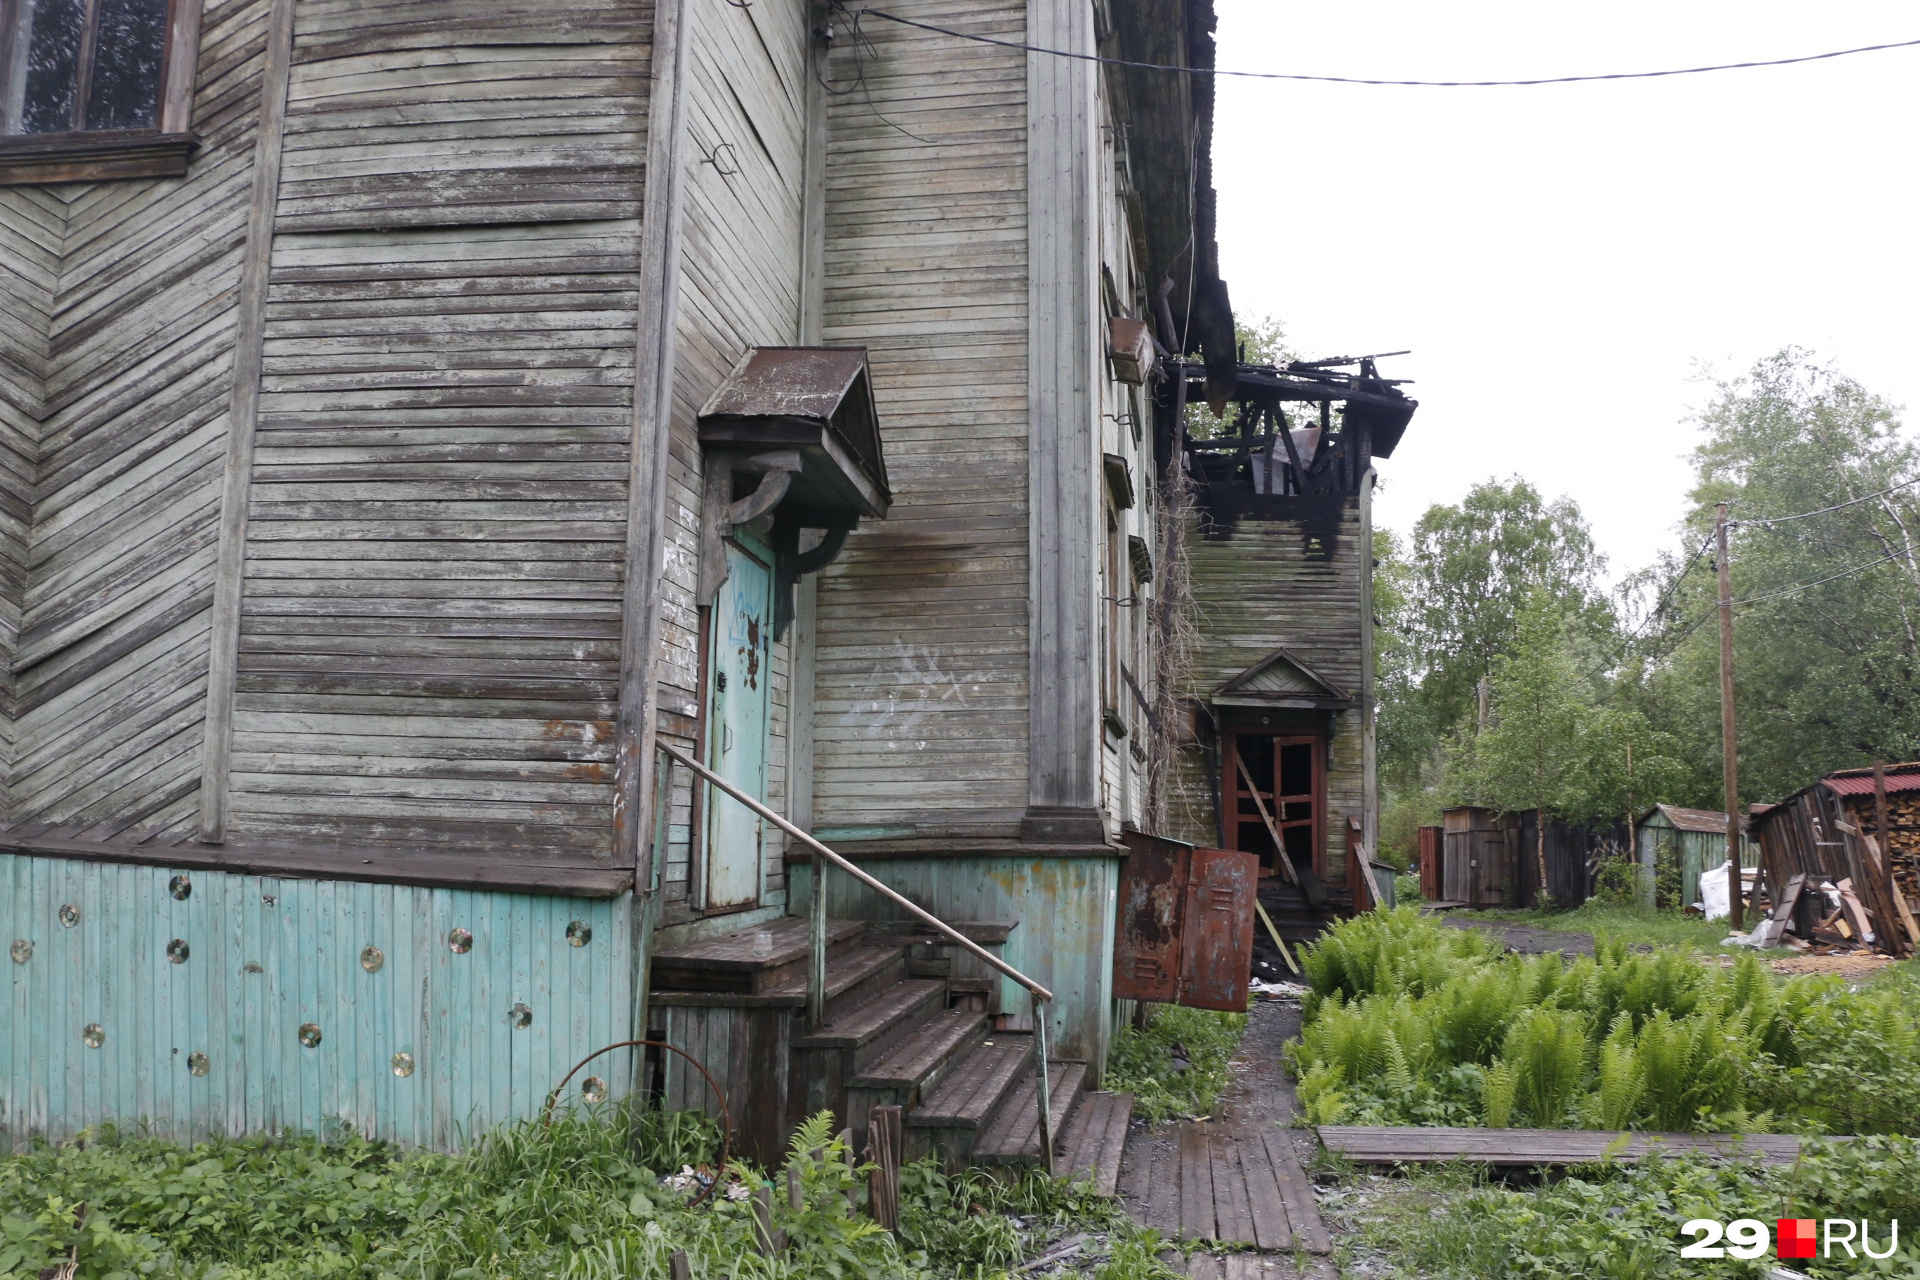 Дом № 6 в переулке Водников горел ещё 25 апреля. Жильцы добиваются нового жилья до сих пор